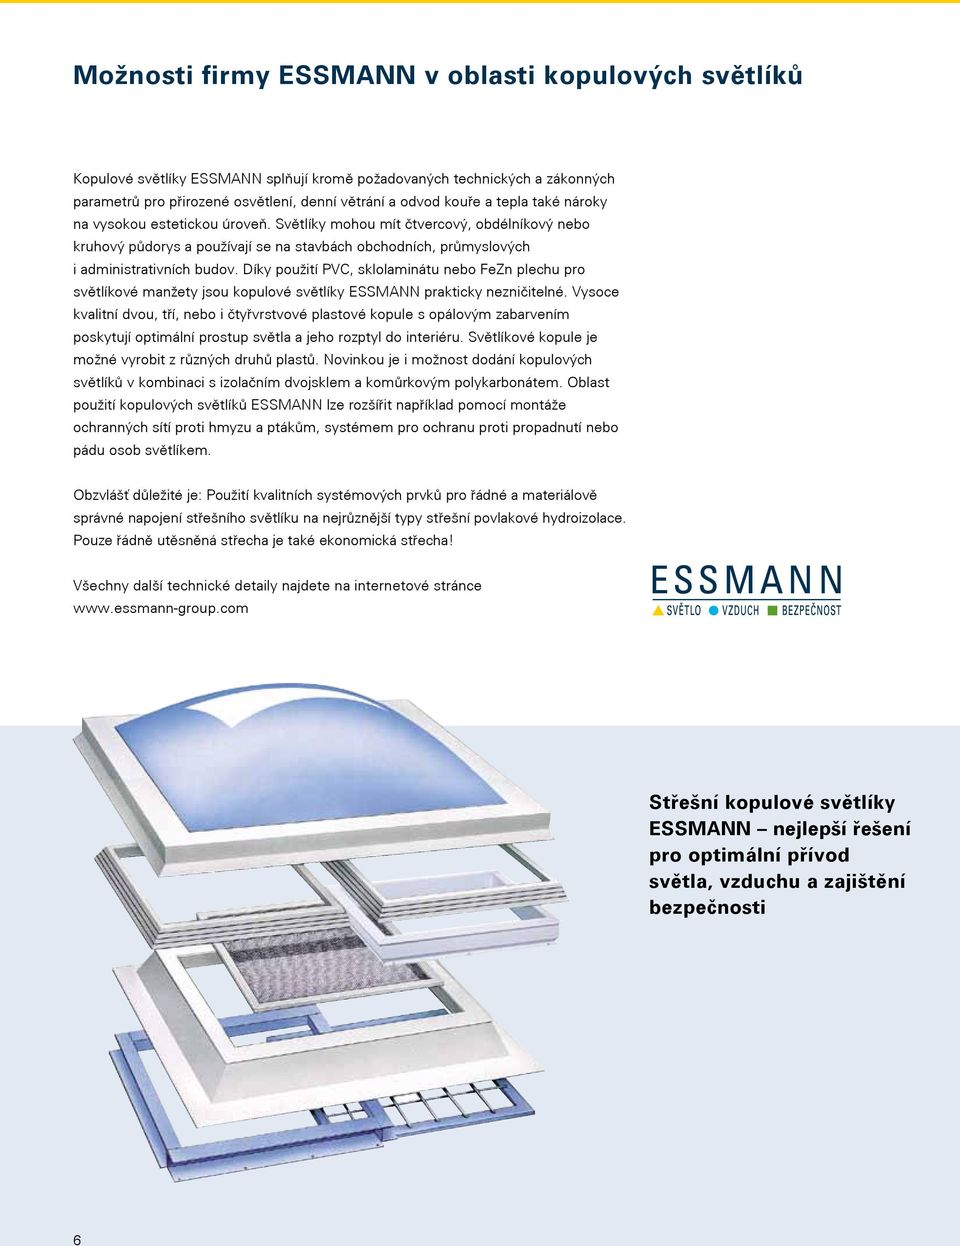 Díky použití PVC, sklolaminátu nebo FeZn plechu pro světlíkové manžety jsou kopulové světlíky ESSMANN prakticky nezničitelné.